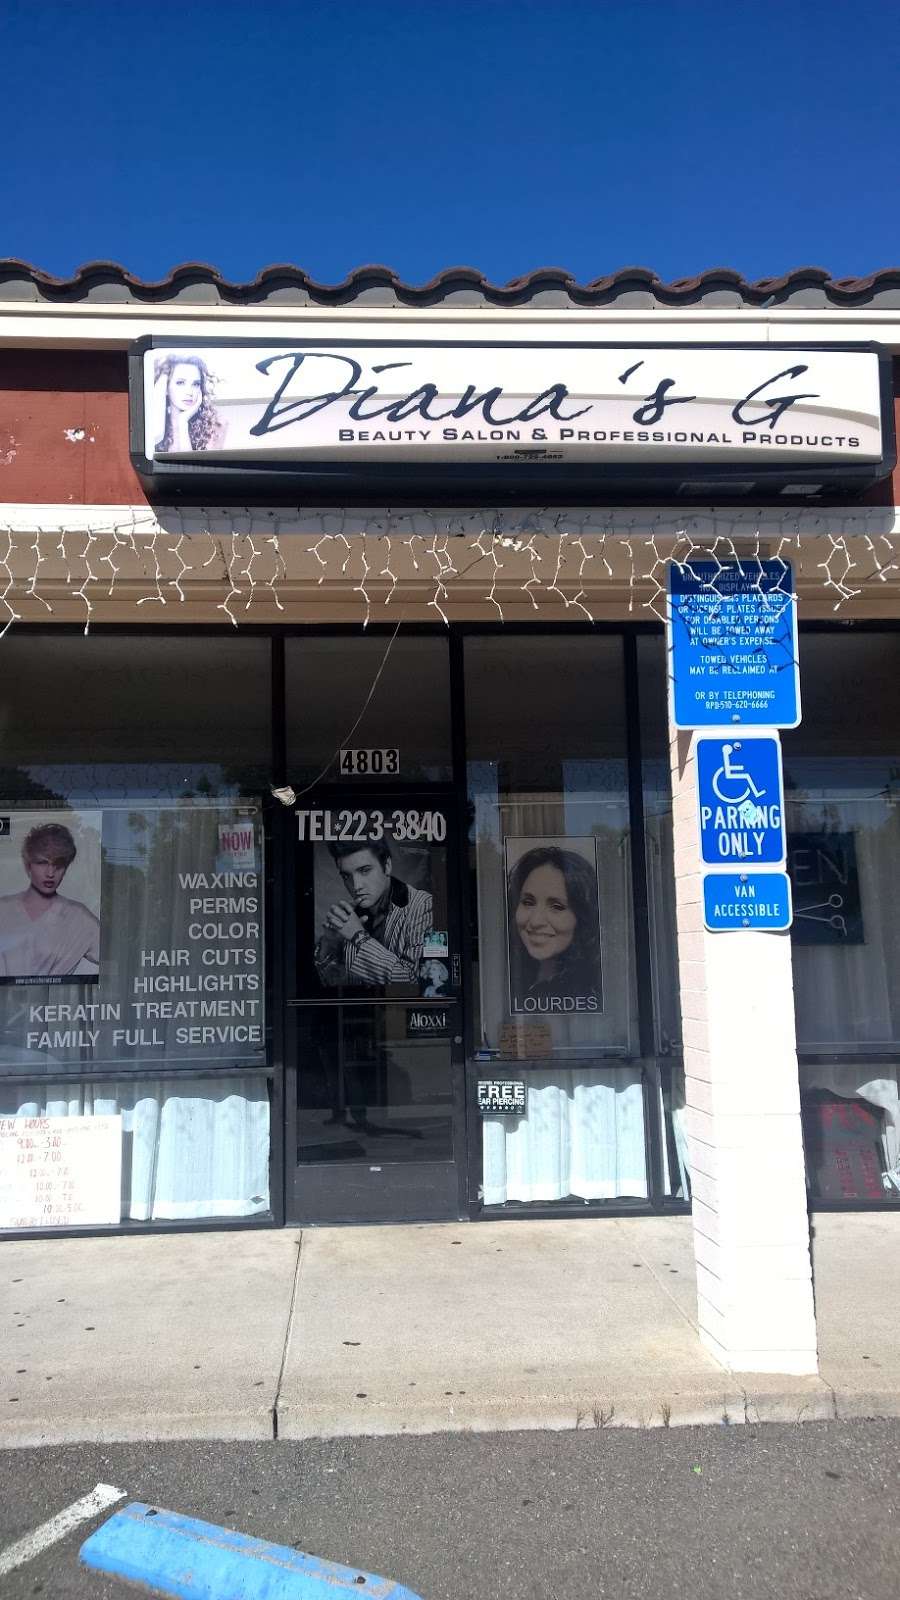 Dianas G Beauty Salon | 4801 Valley View Rd, El Sobrante, CA 94803 | Phone: (510) 223-3840